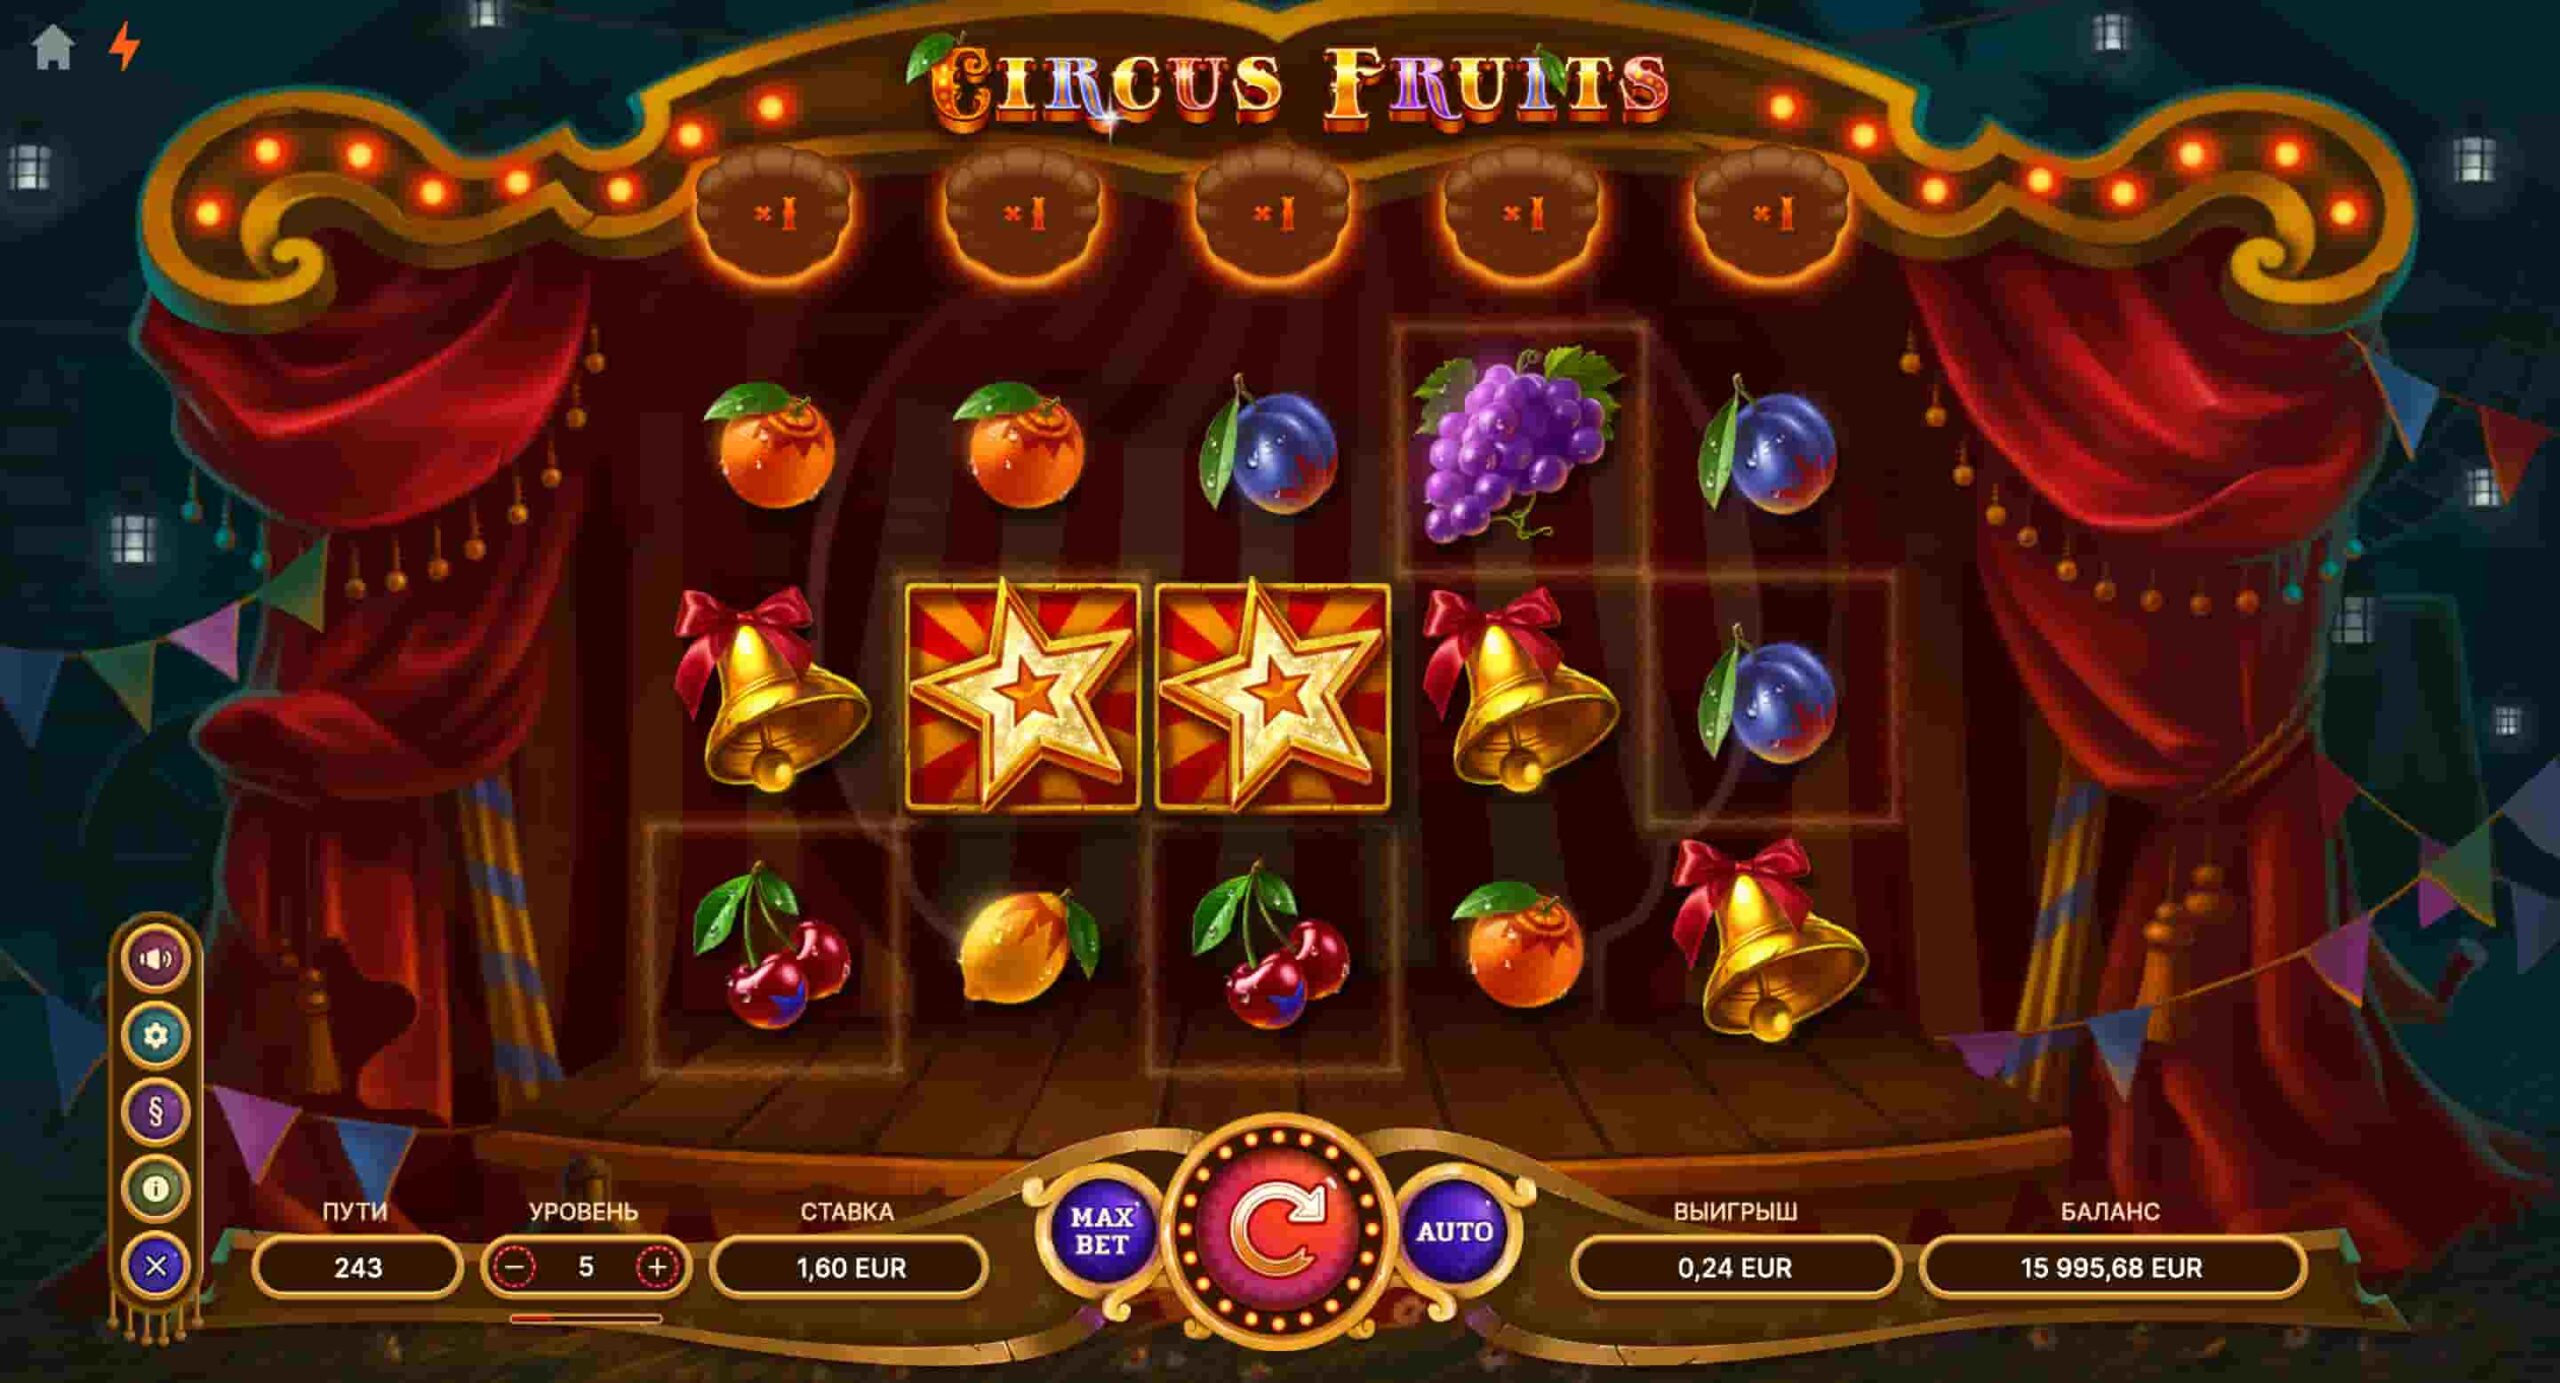 Circus Fruits 5